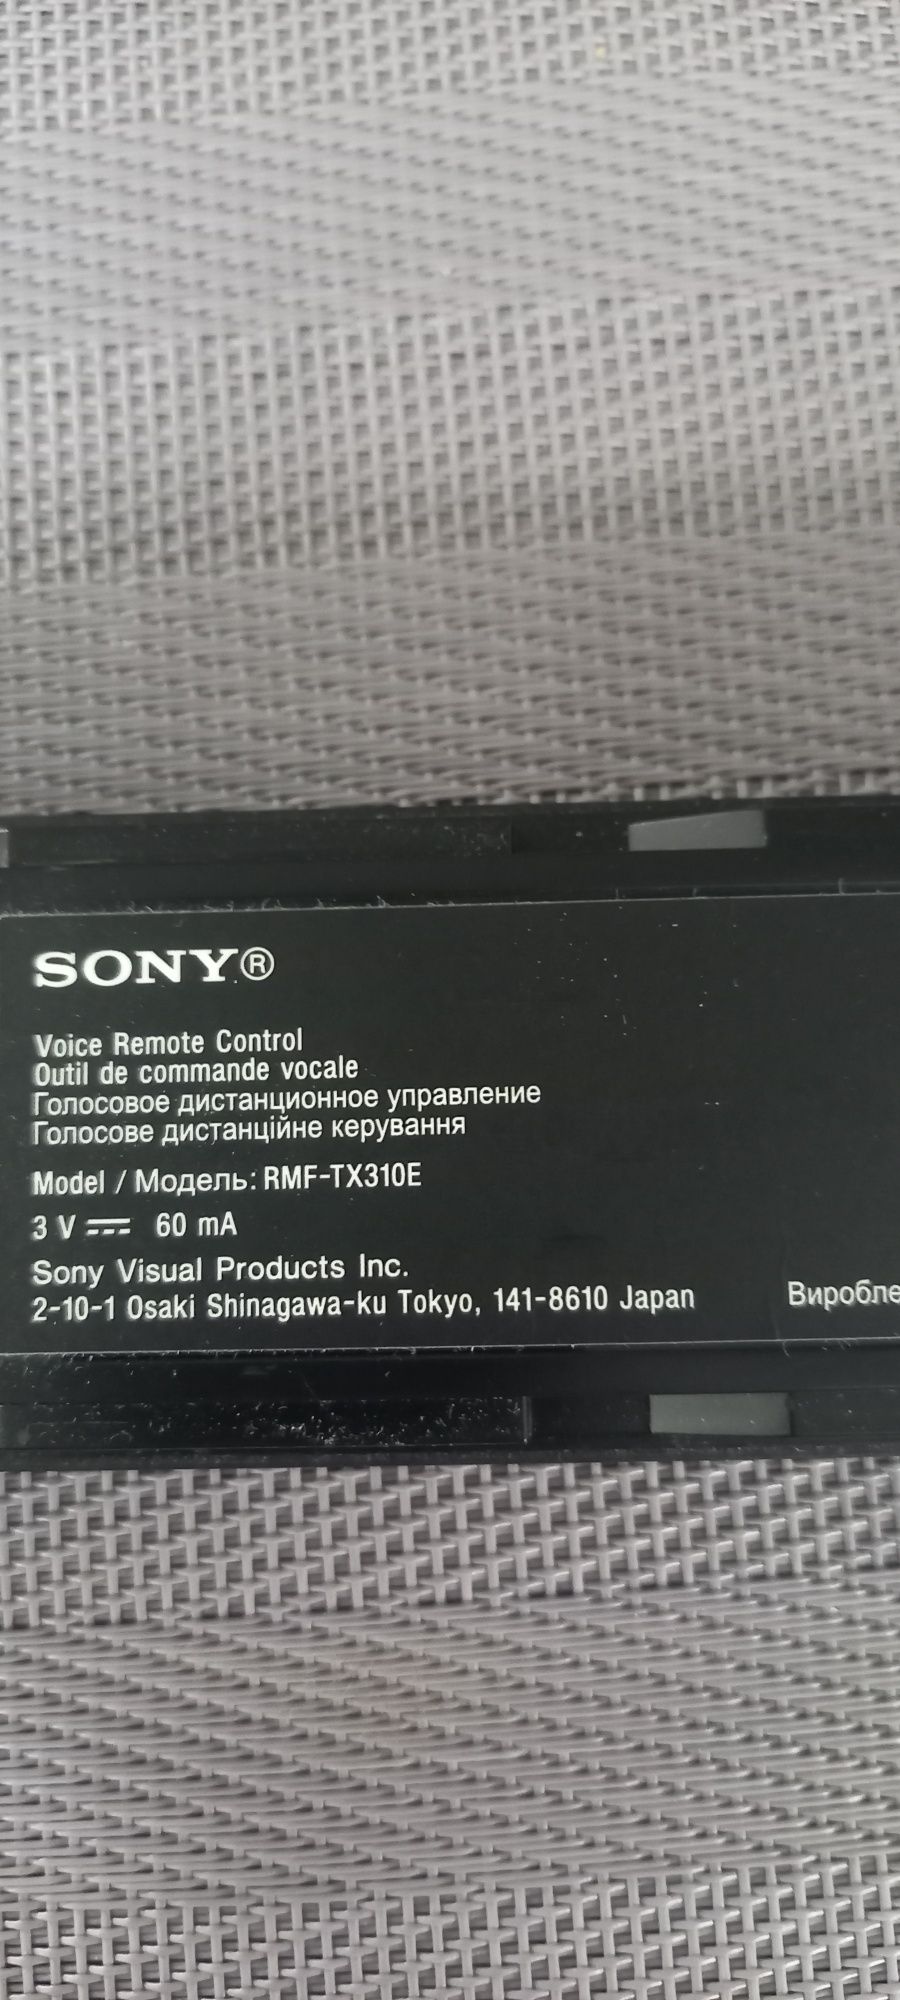 Pilot TV Sony RMF-TX 310E Oryginał Głosowy Ładny